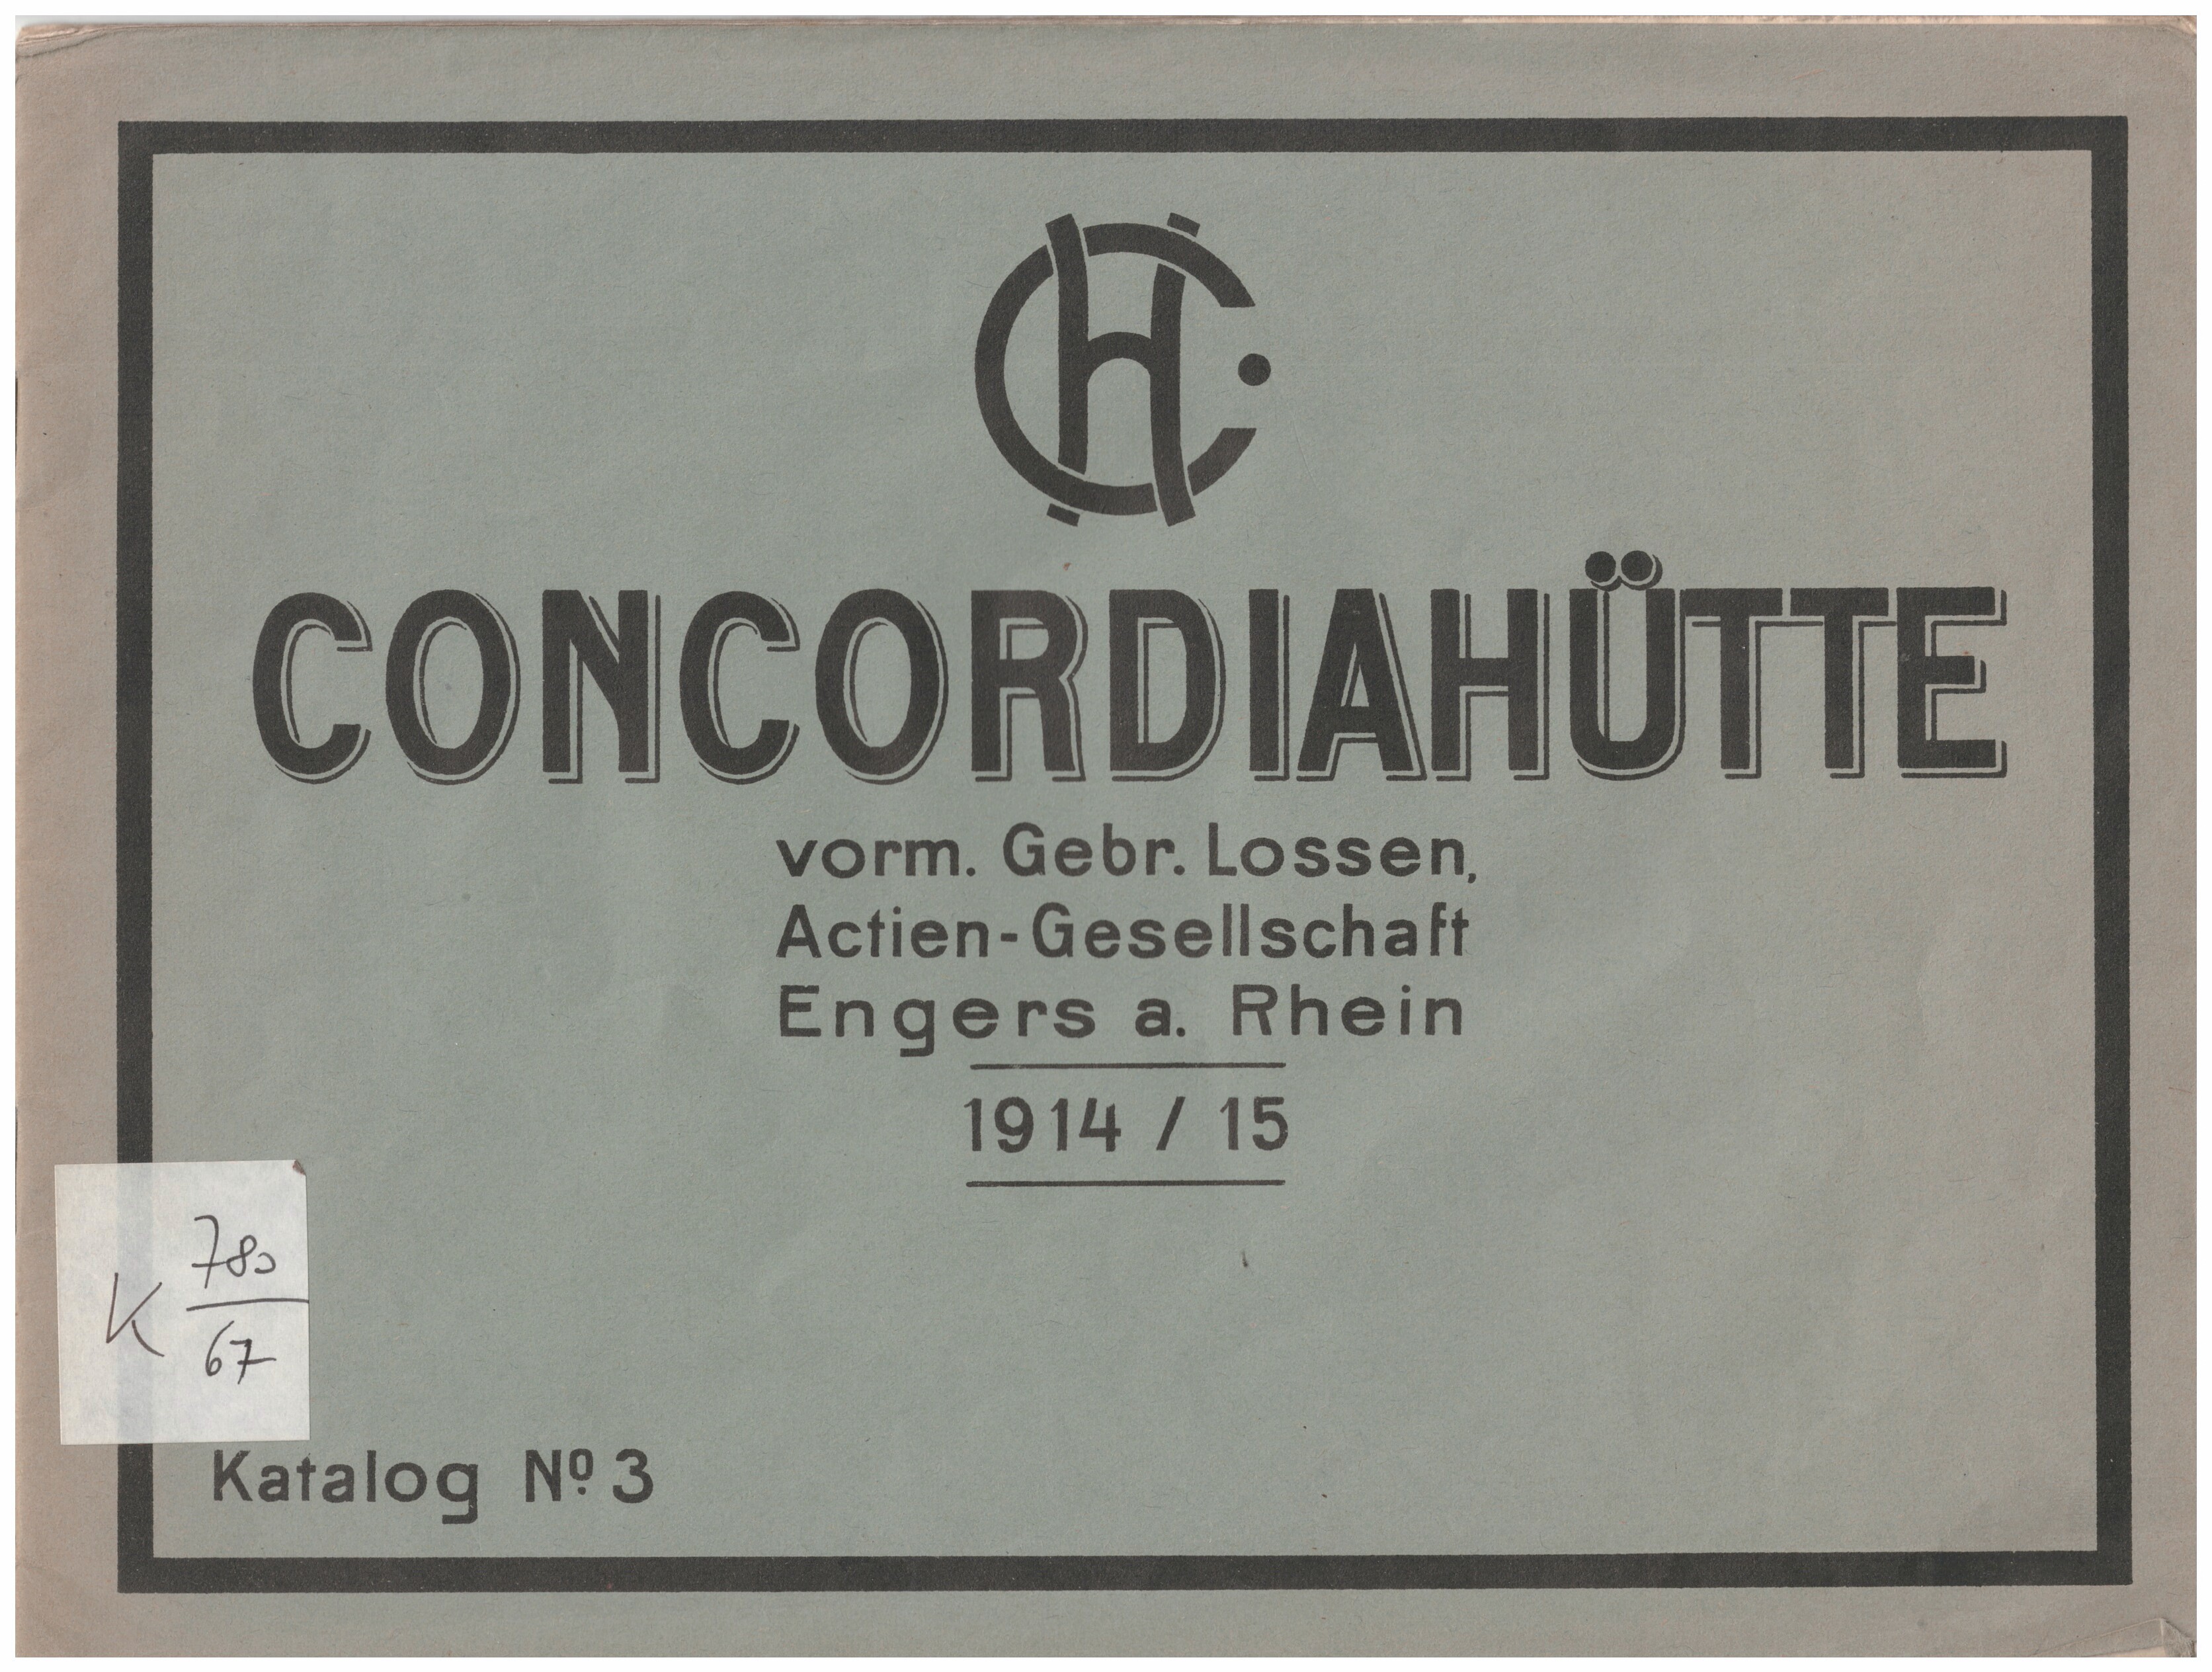 Produktkatalog Concordiahütte 1914/1915 (Stiftung Sayner Hütte, Rheinisches Eisenkunstguss-Museum CC BY-NC-SA)